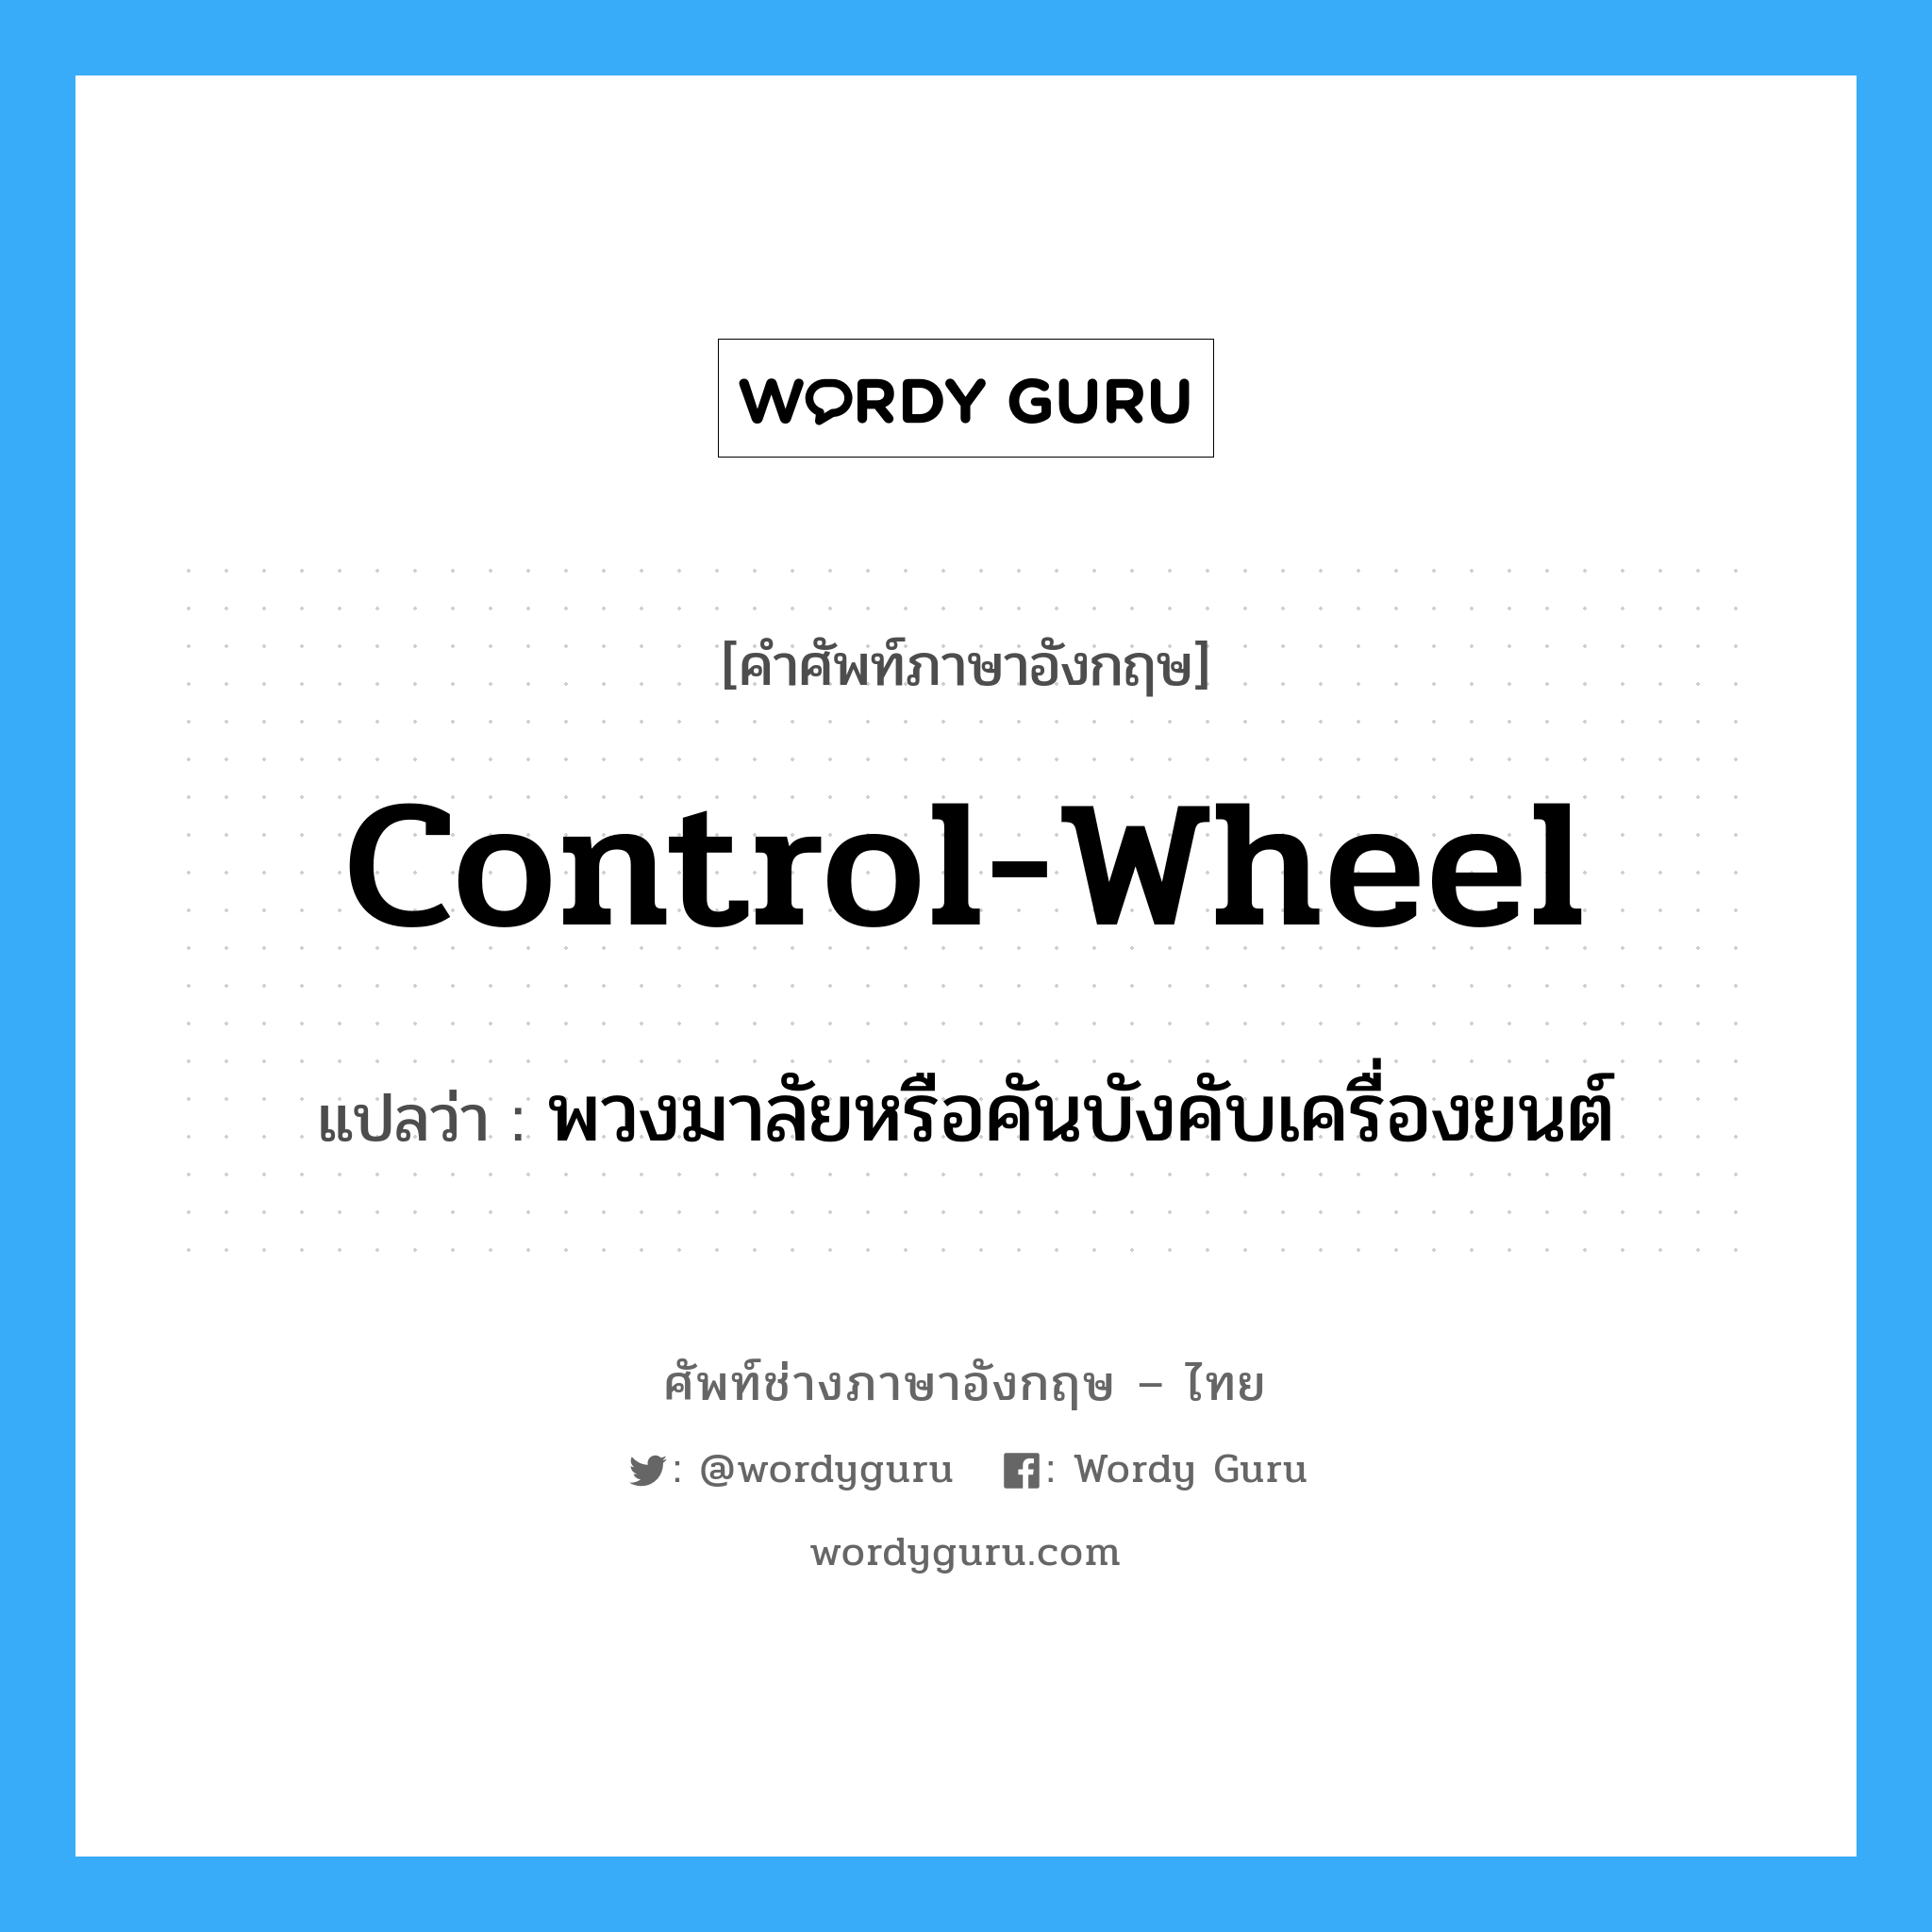 พวงมาลัยหรือคันบังคับเครื่องยนต์ ภาษาอังกฤษ?, คำศัพท์ช่างภาษาอังกฤษ - ไทย พวงมาลัยหรือคันบังคับเครื่องยนต์ คำศัพท์ภาษาอังกฤษ พวงมาลัยหรือคันบังคับเครื่องยนต์ แปลว่า control-wheel